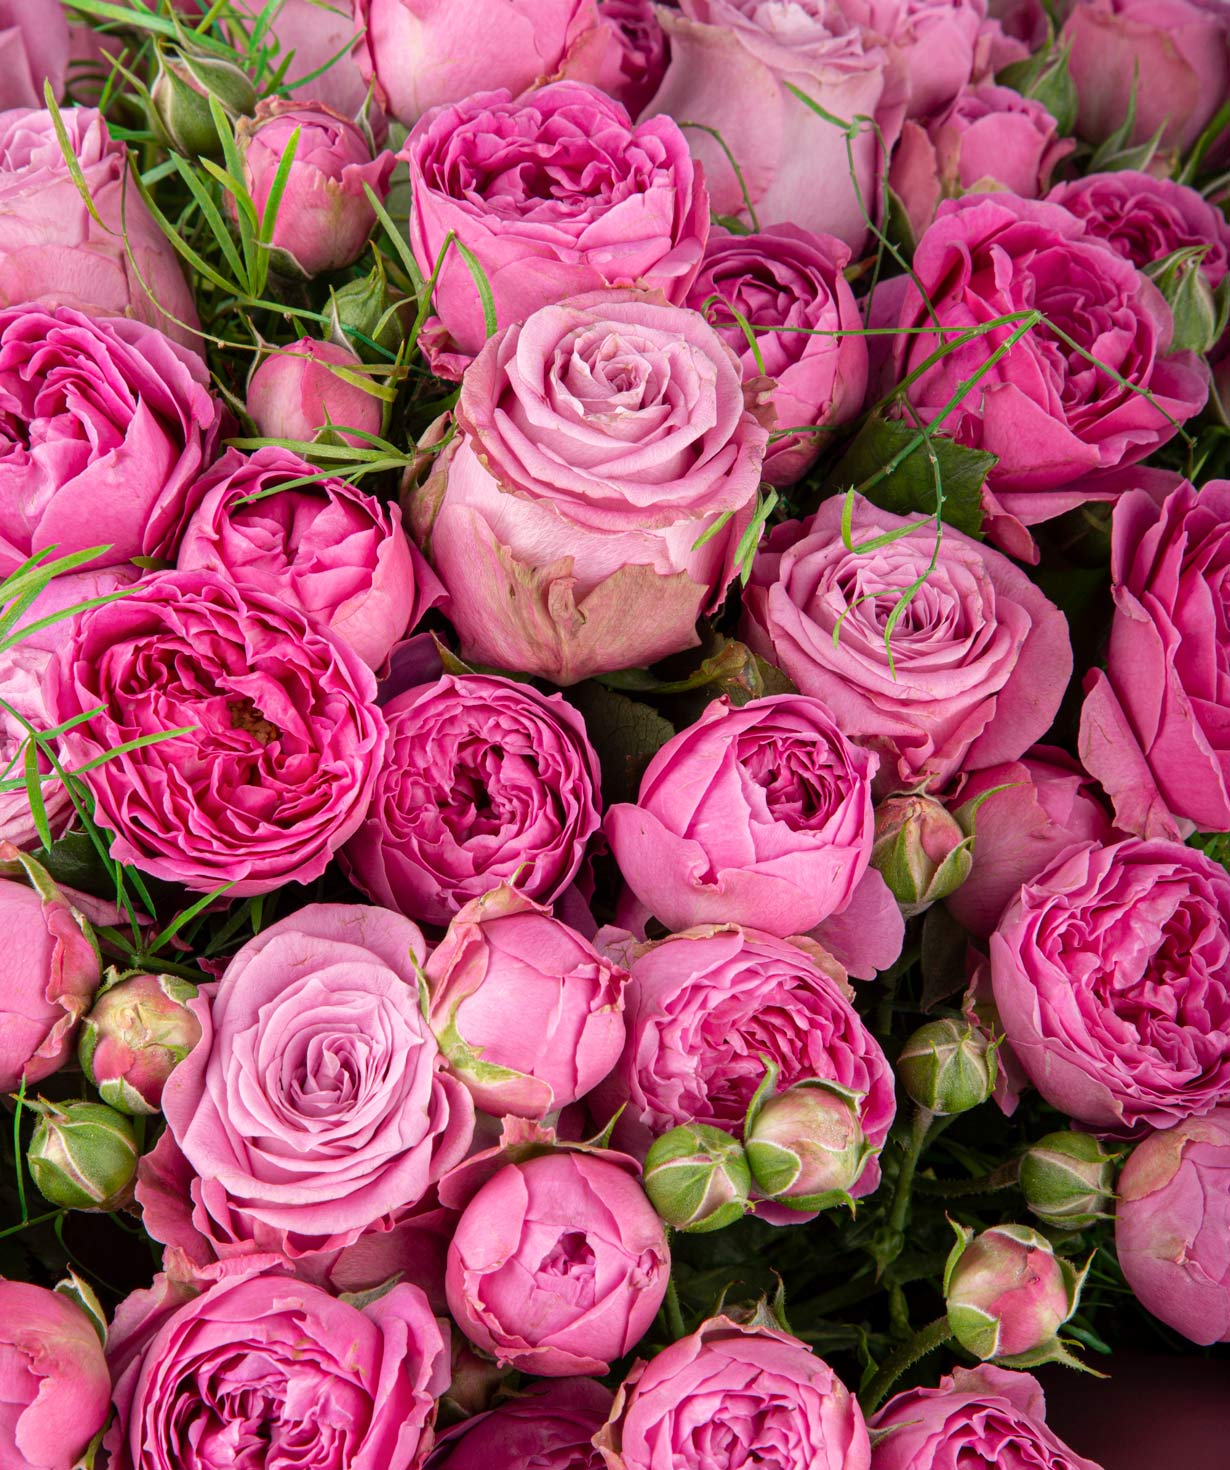 Ծաղկեփունջ «Օլբորգ»  վարդերով և պիոնավարդերով